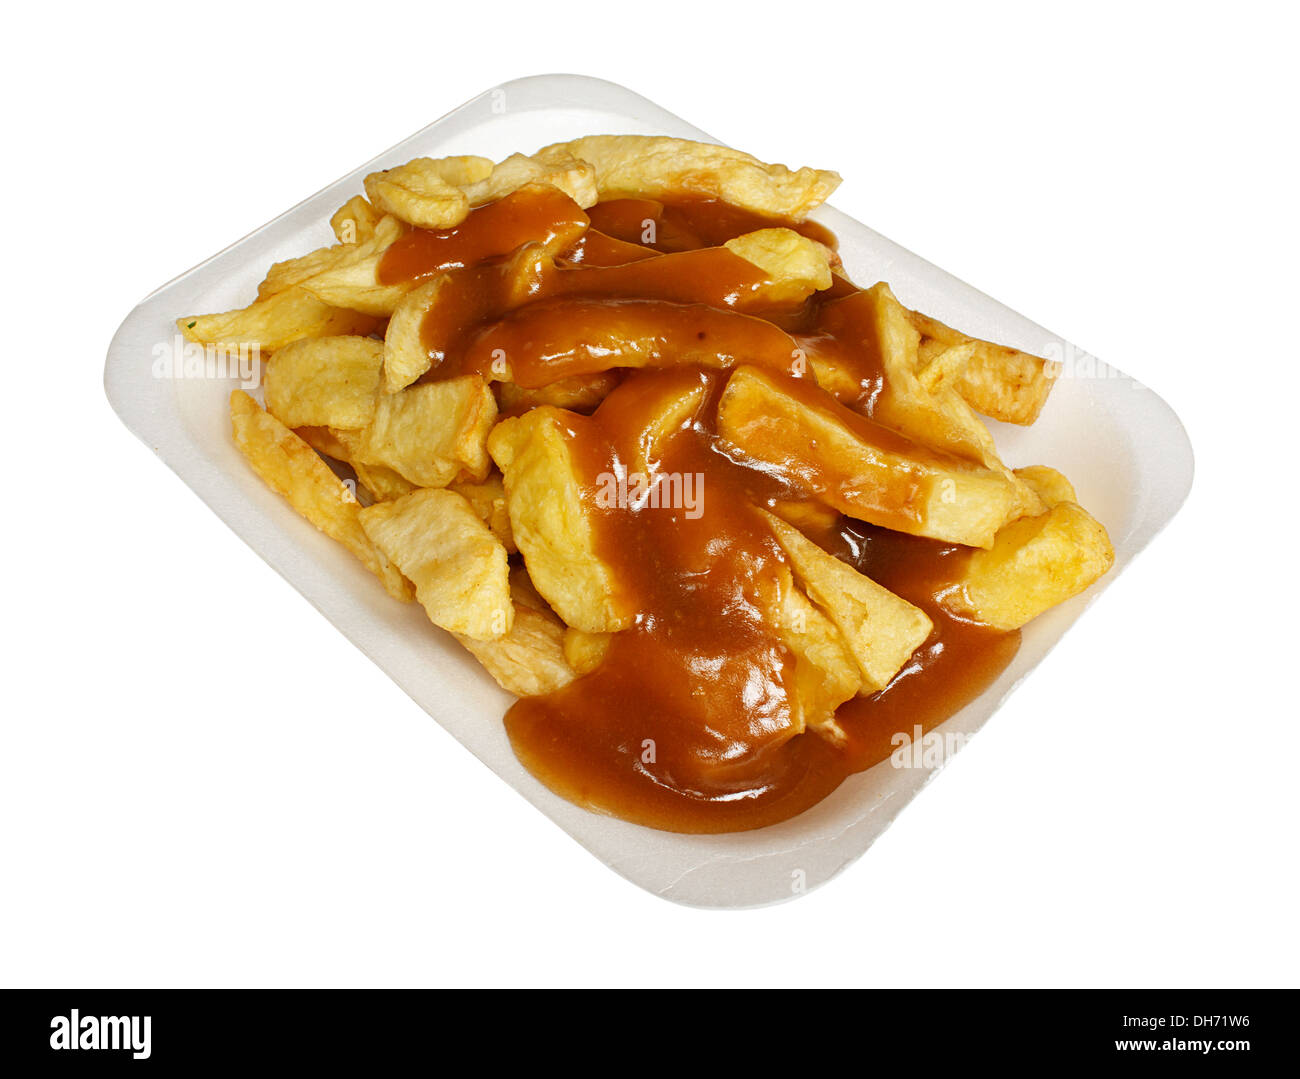 Le patatine fritte o patatine e salsa di un popolare europeo snack da asporto, servita in una vaschetta di polistirolo da estrarre. Foto Stock